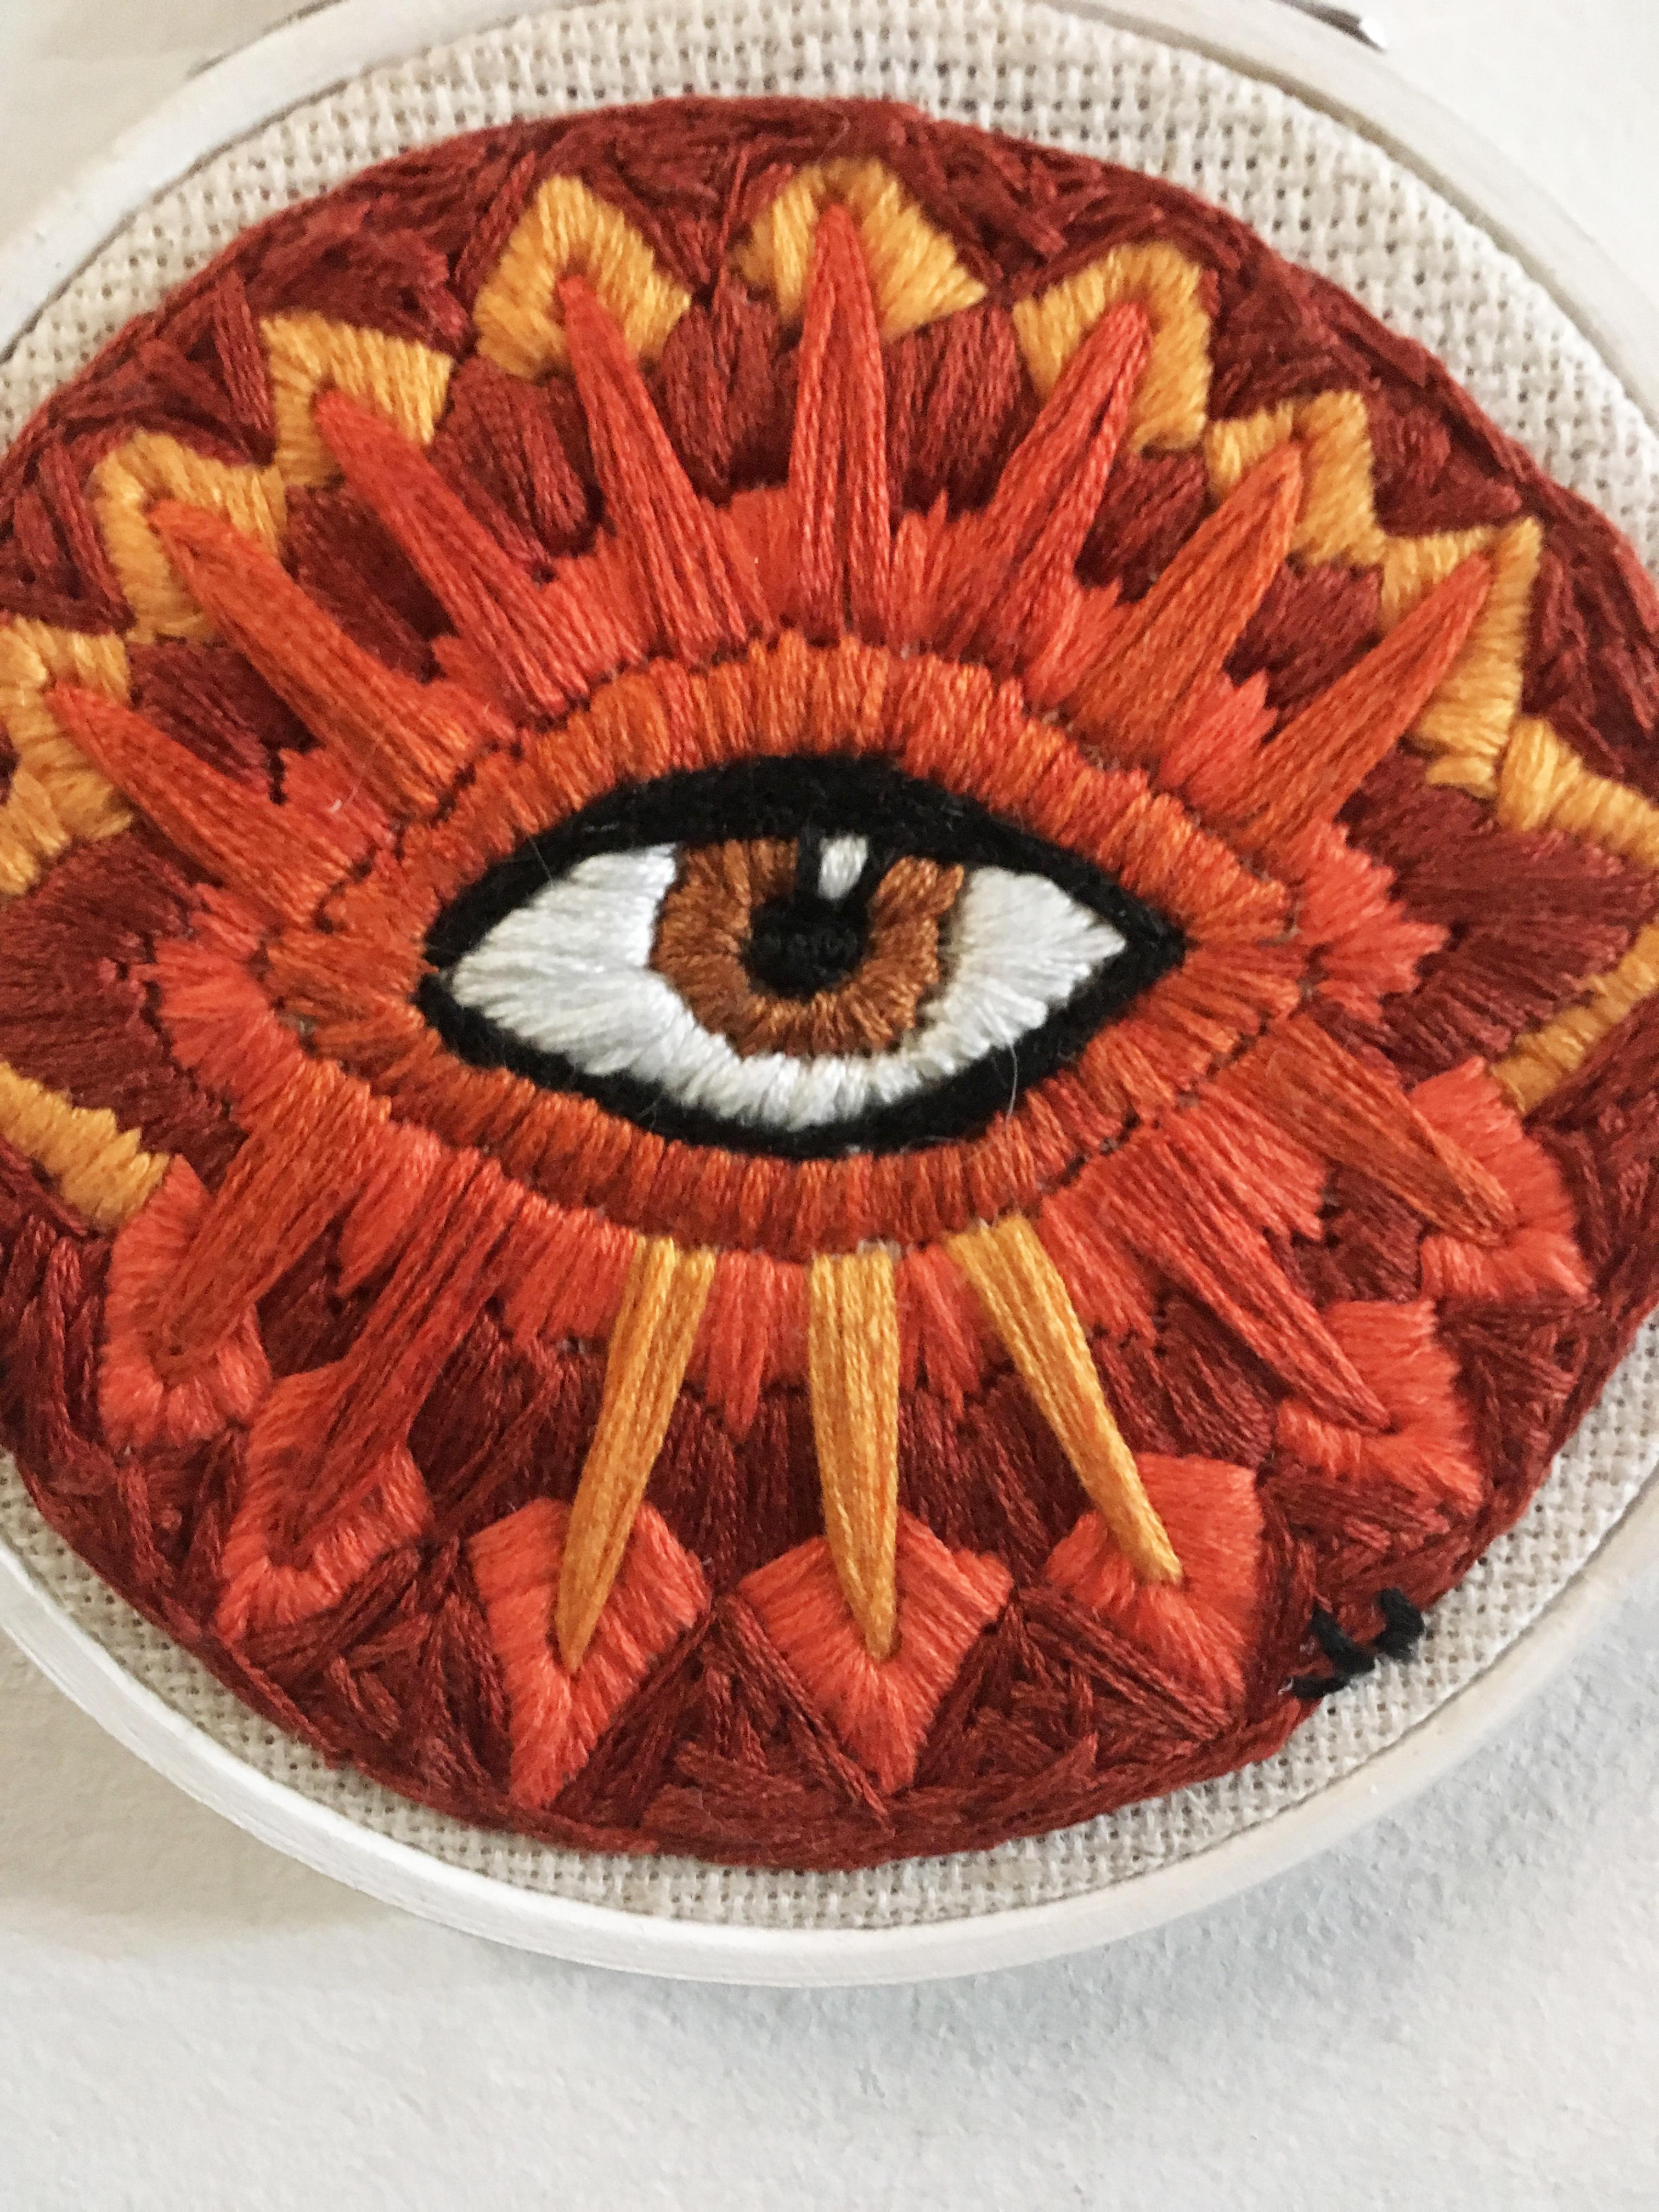 Embroidery, wood hoop
